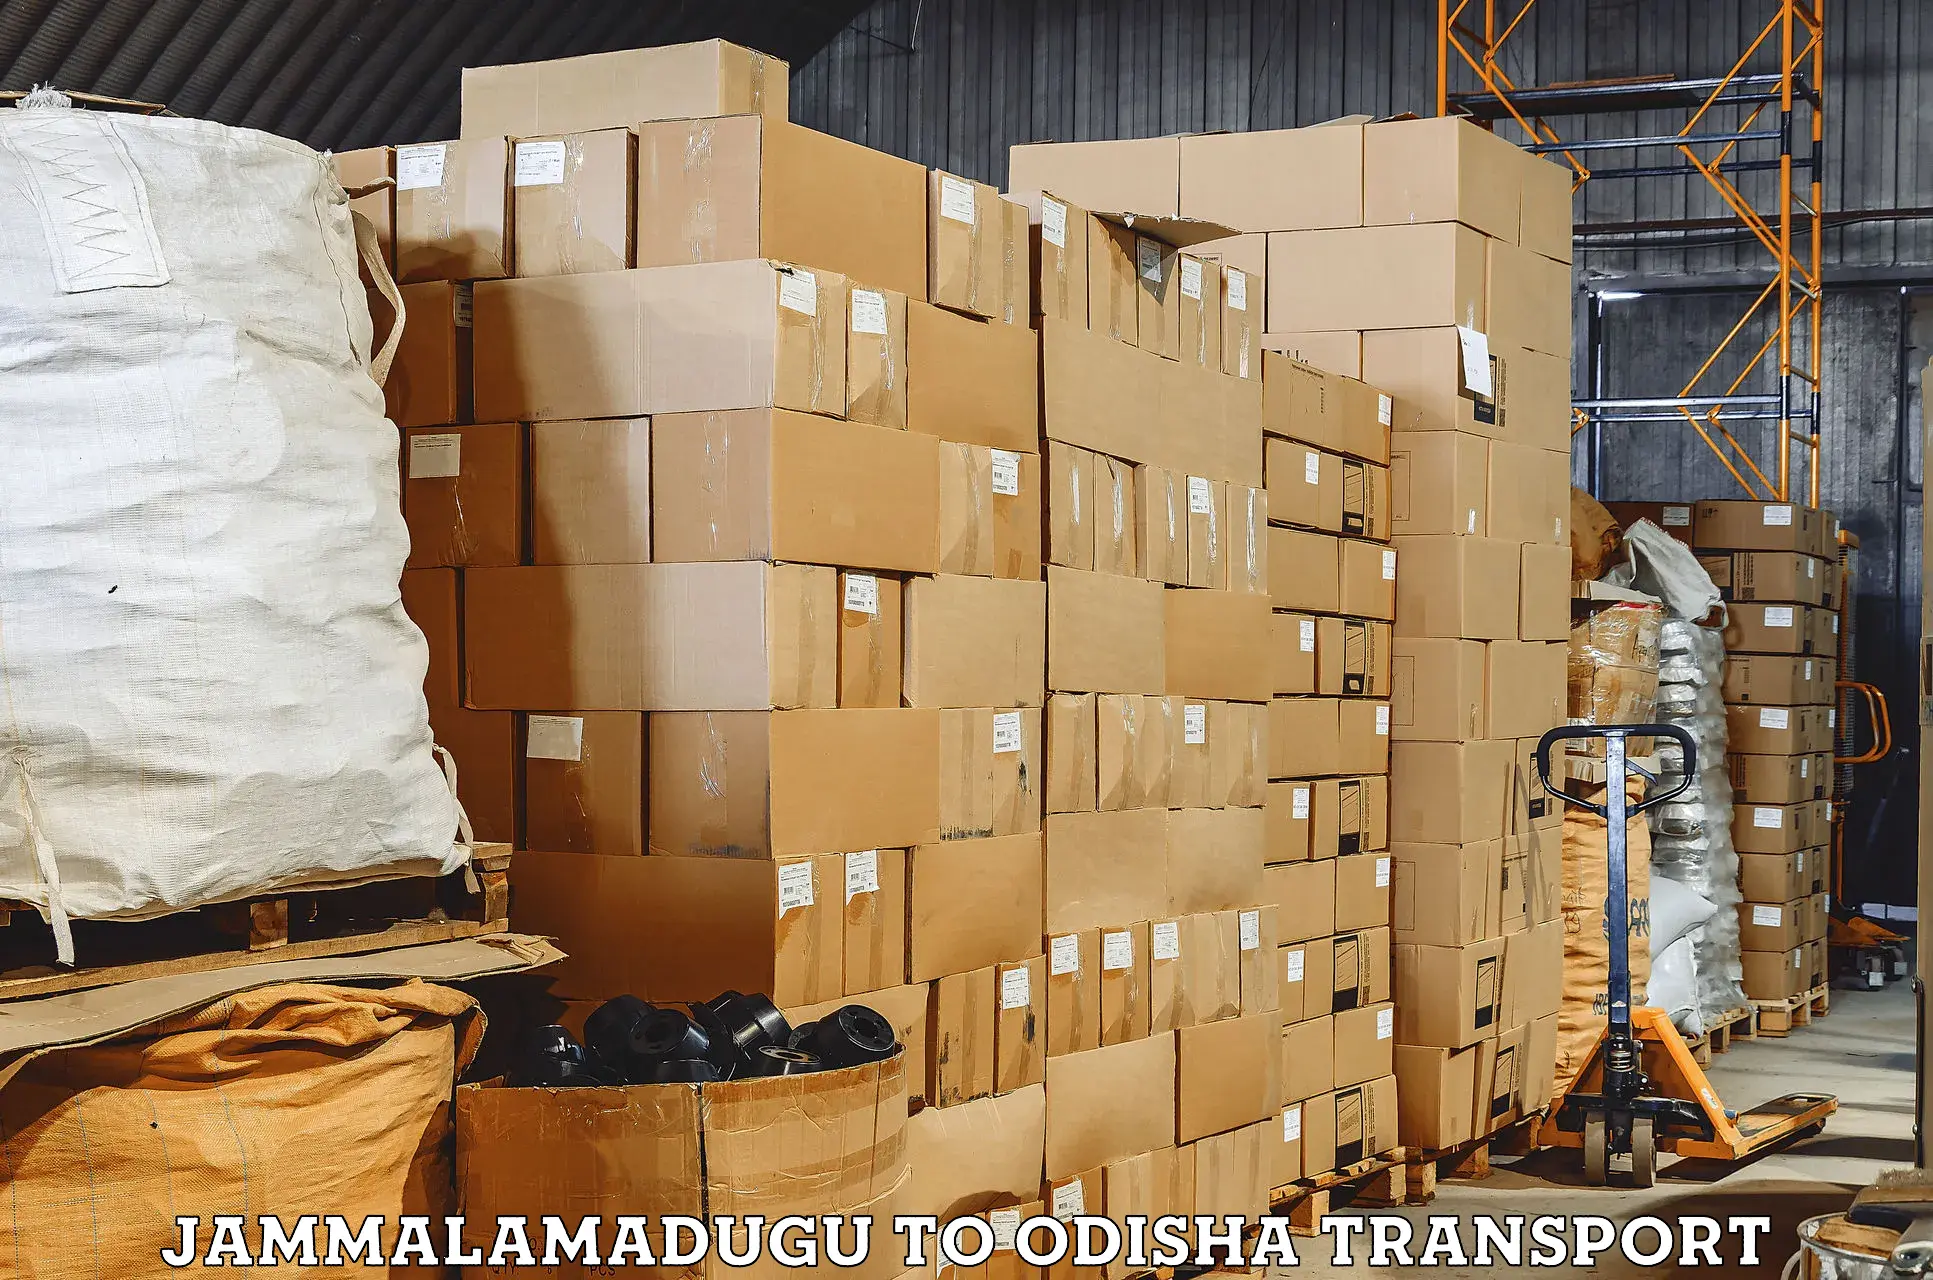 Air freight transport services Jammalamadugu to Dhamara